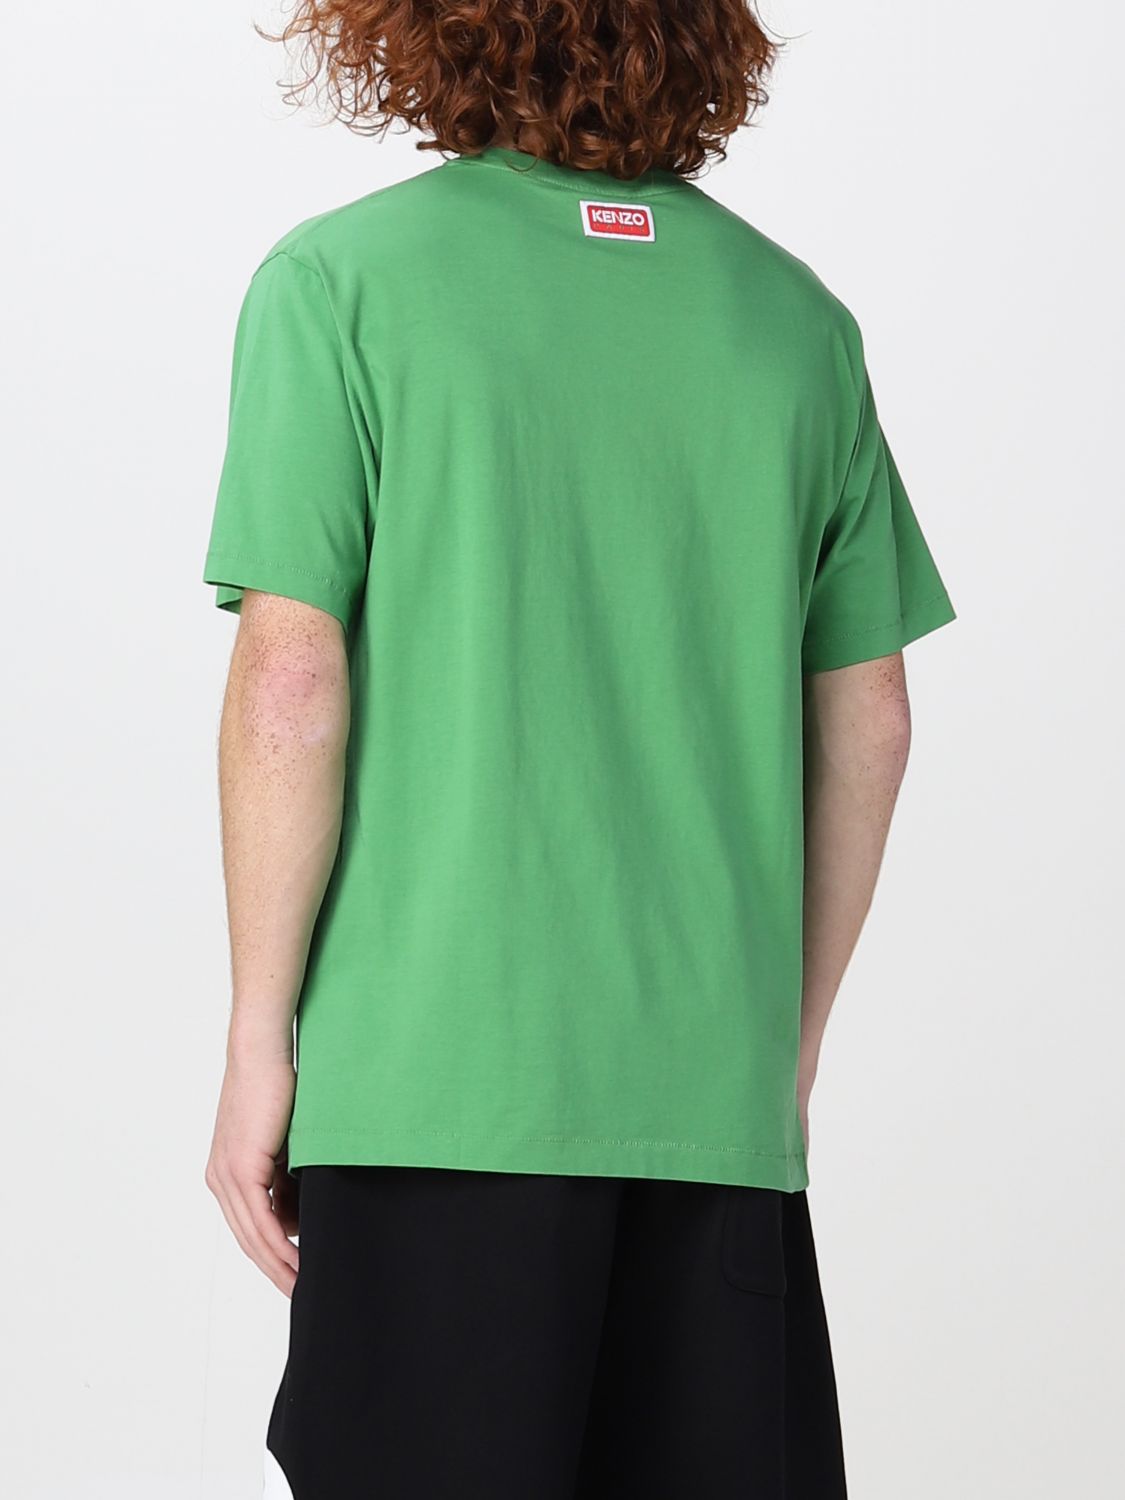 T-shirt Kenzo: T-shirt Boke Flower Kenzo in cotone verde 3